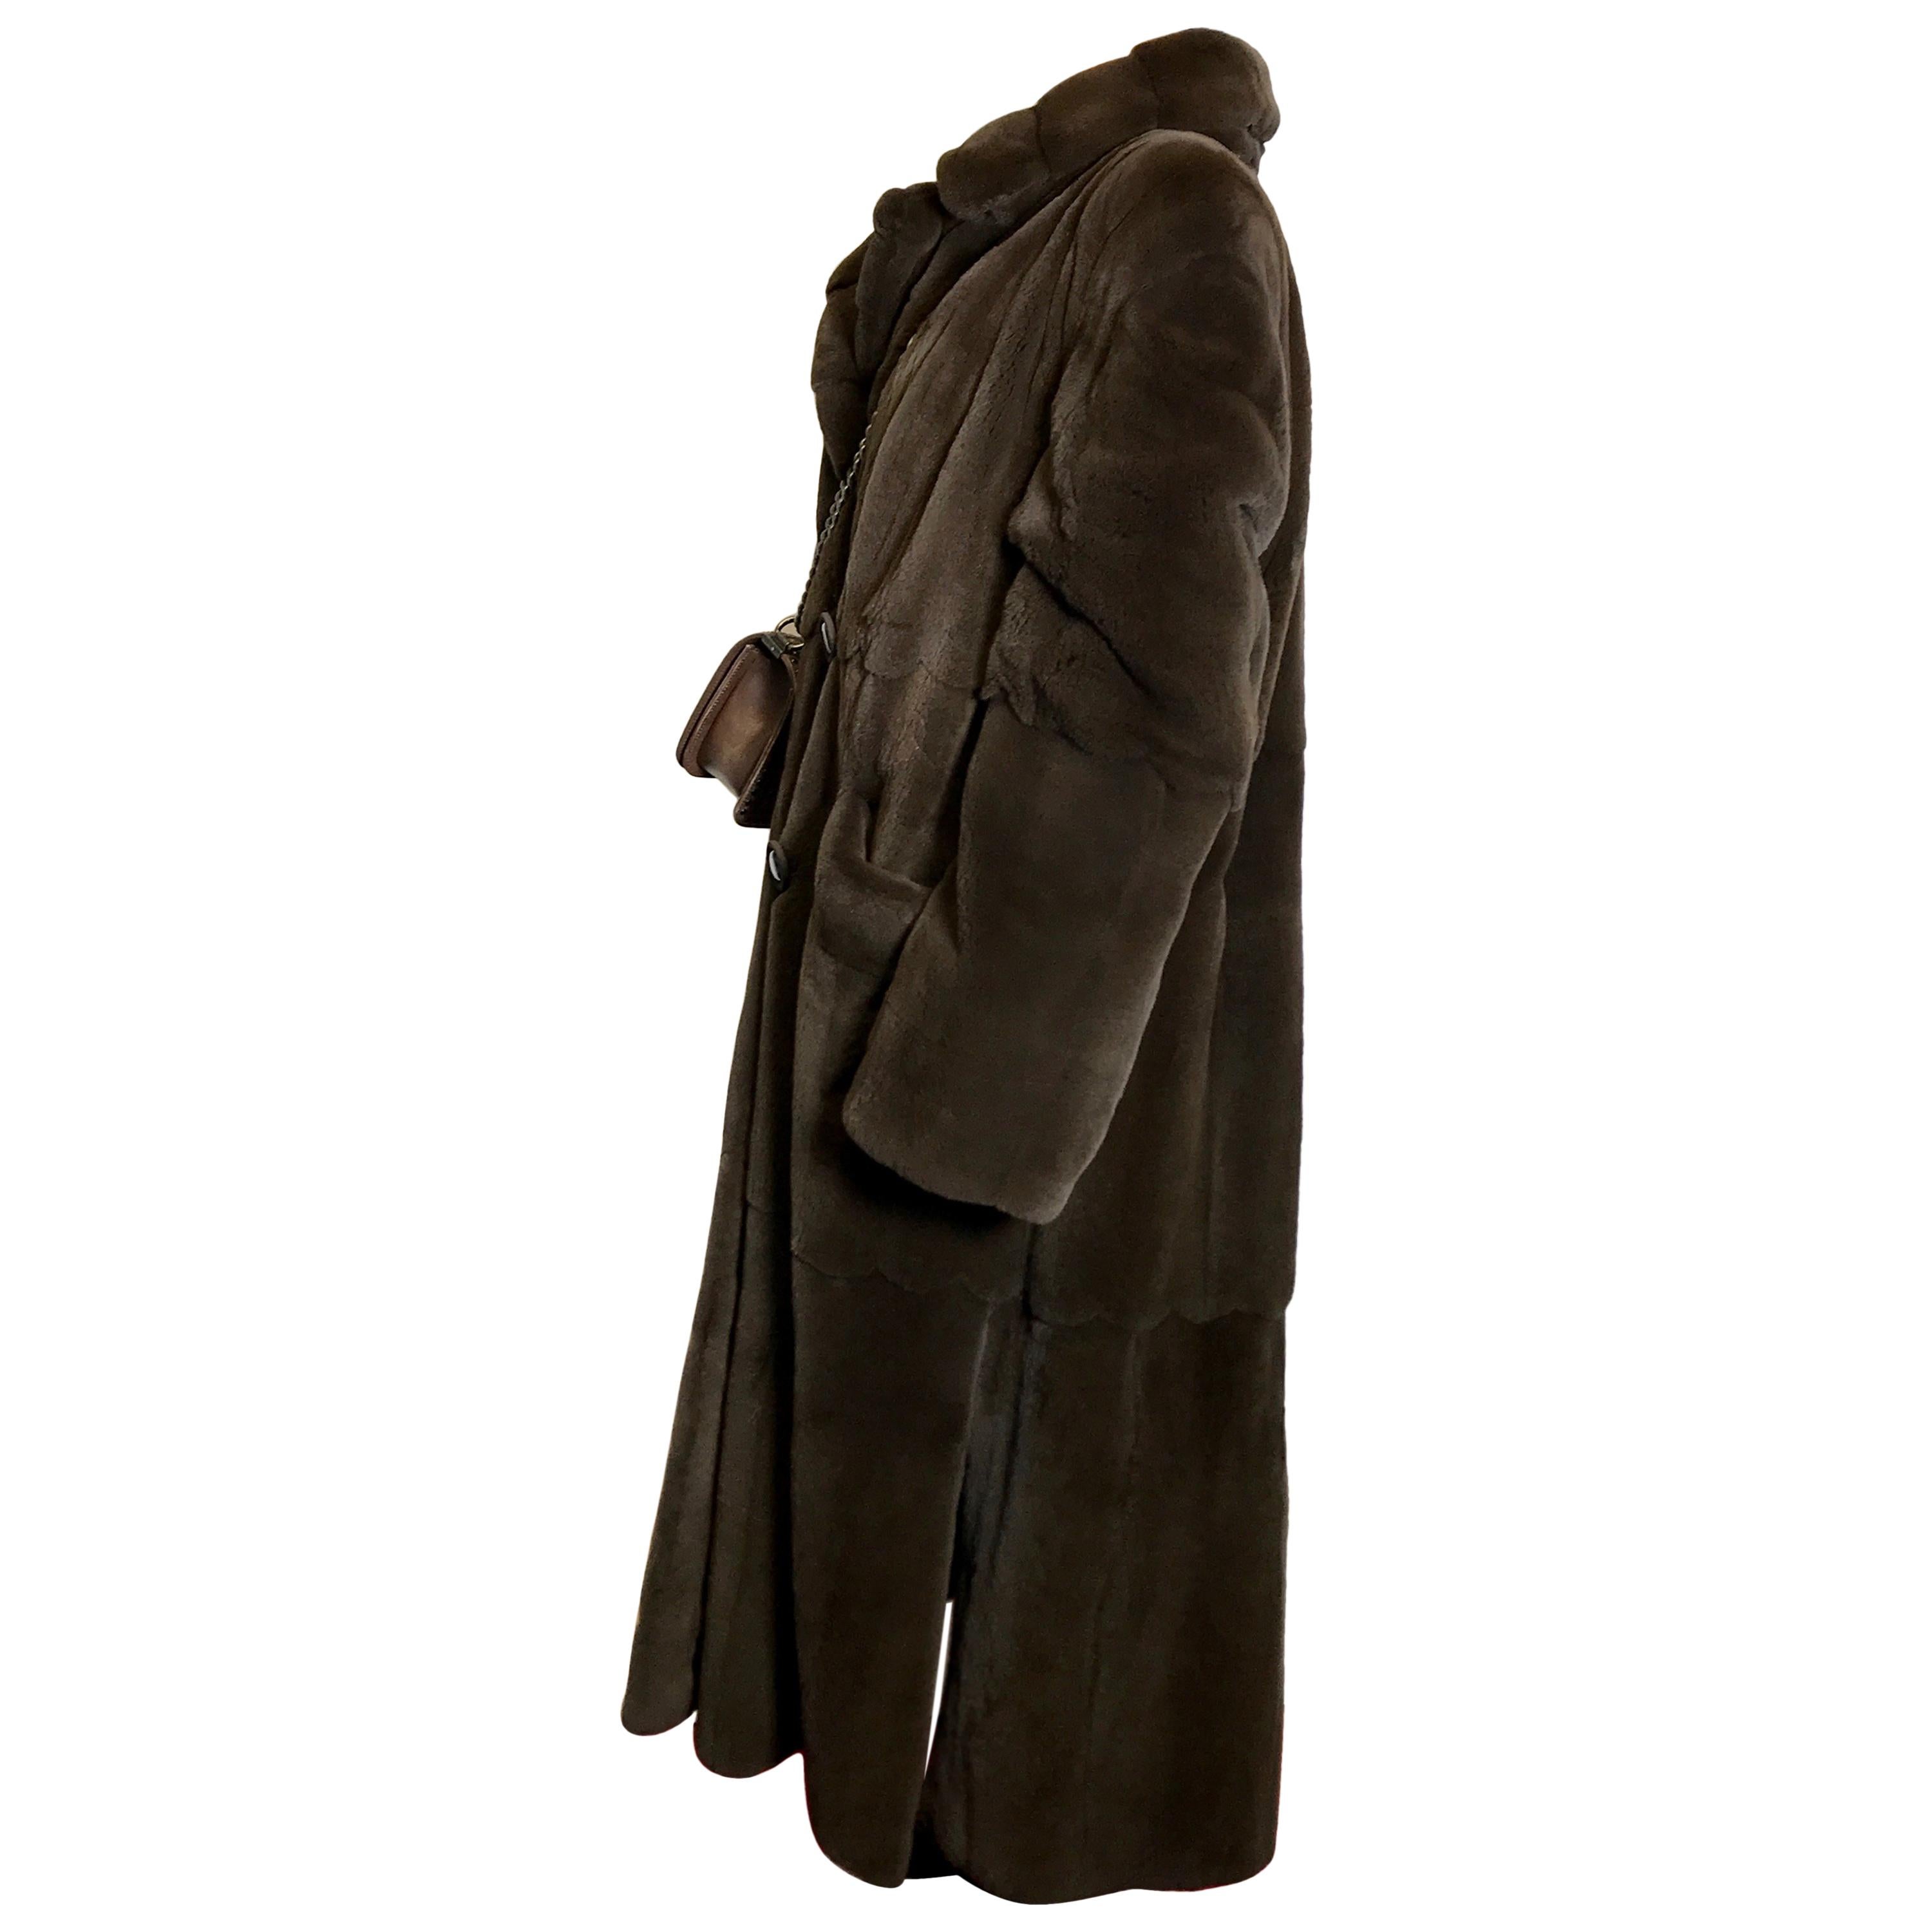 Sheared velvet mink fur long coat modern cut. Dark brown.